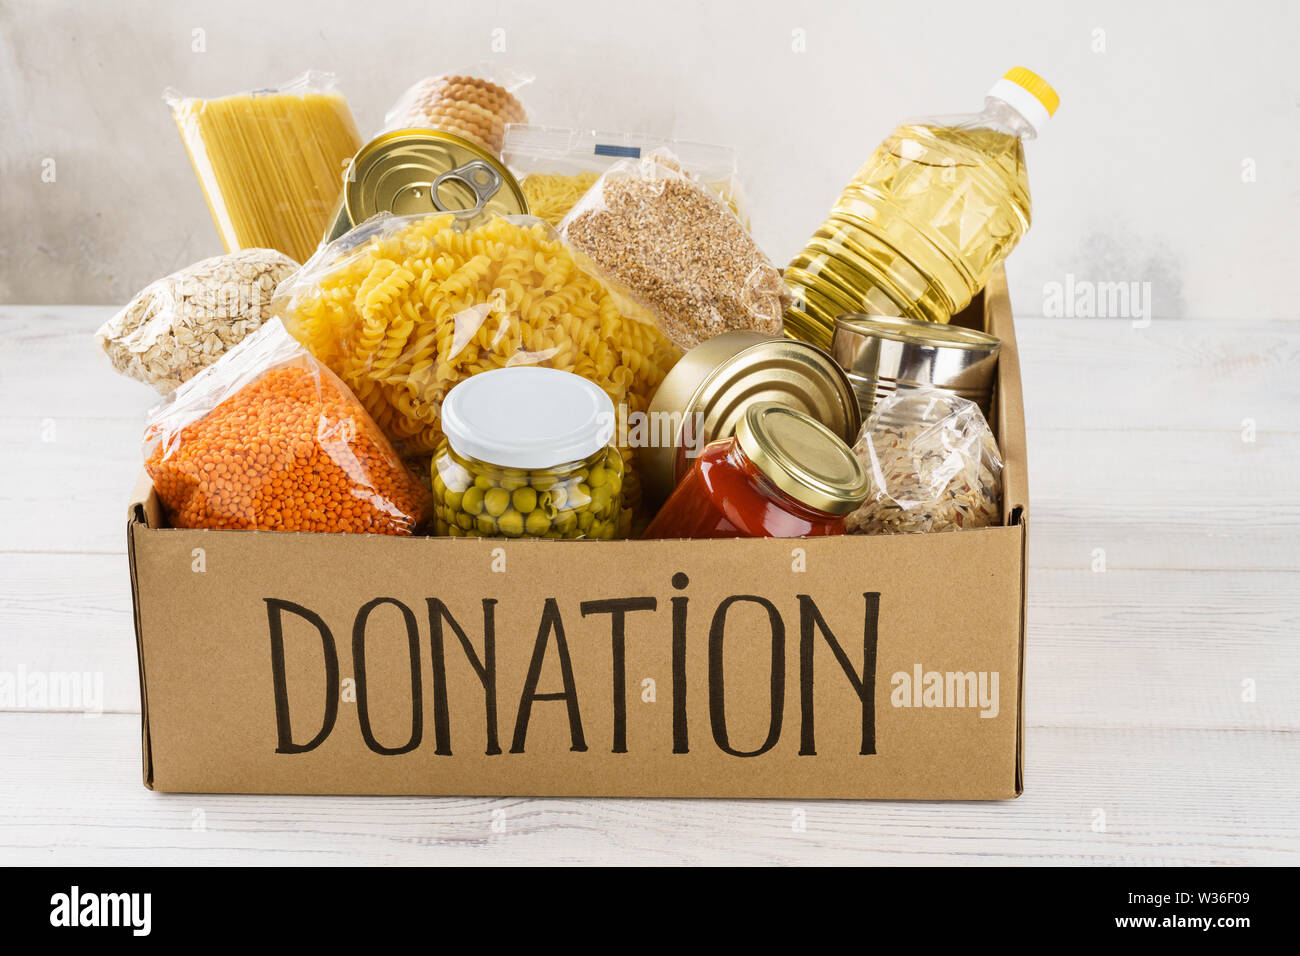 https://c8.alamy.com/compes/w36f09/caja-de-donacion-con-diversos-alimentos-abrir-la-caja-de-carton-con-aceite-alimentos-enlatados-cereales-y-pastas-w36f09.jpg